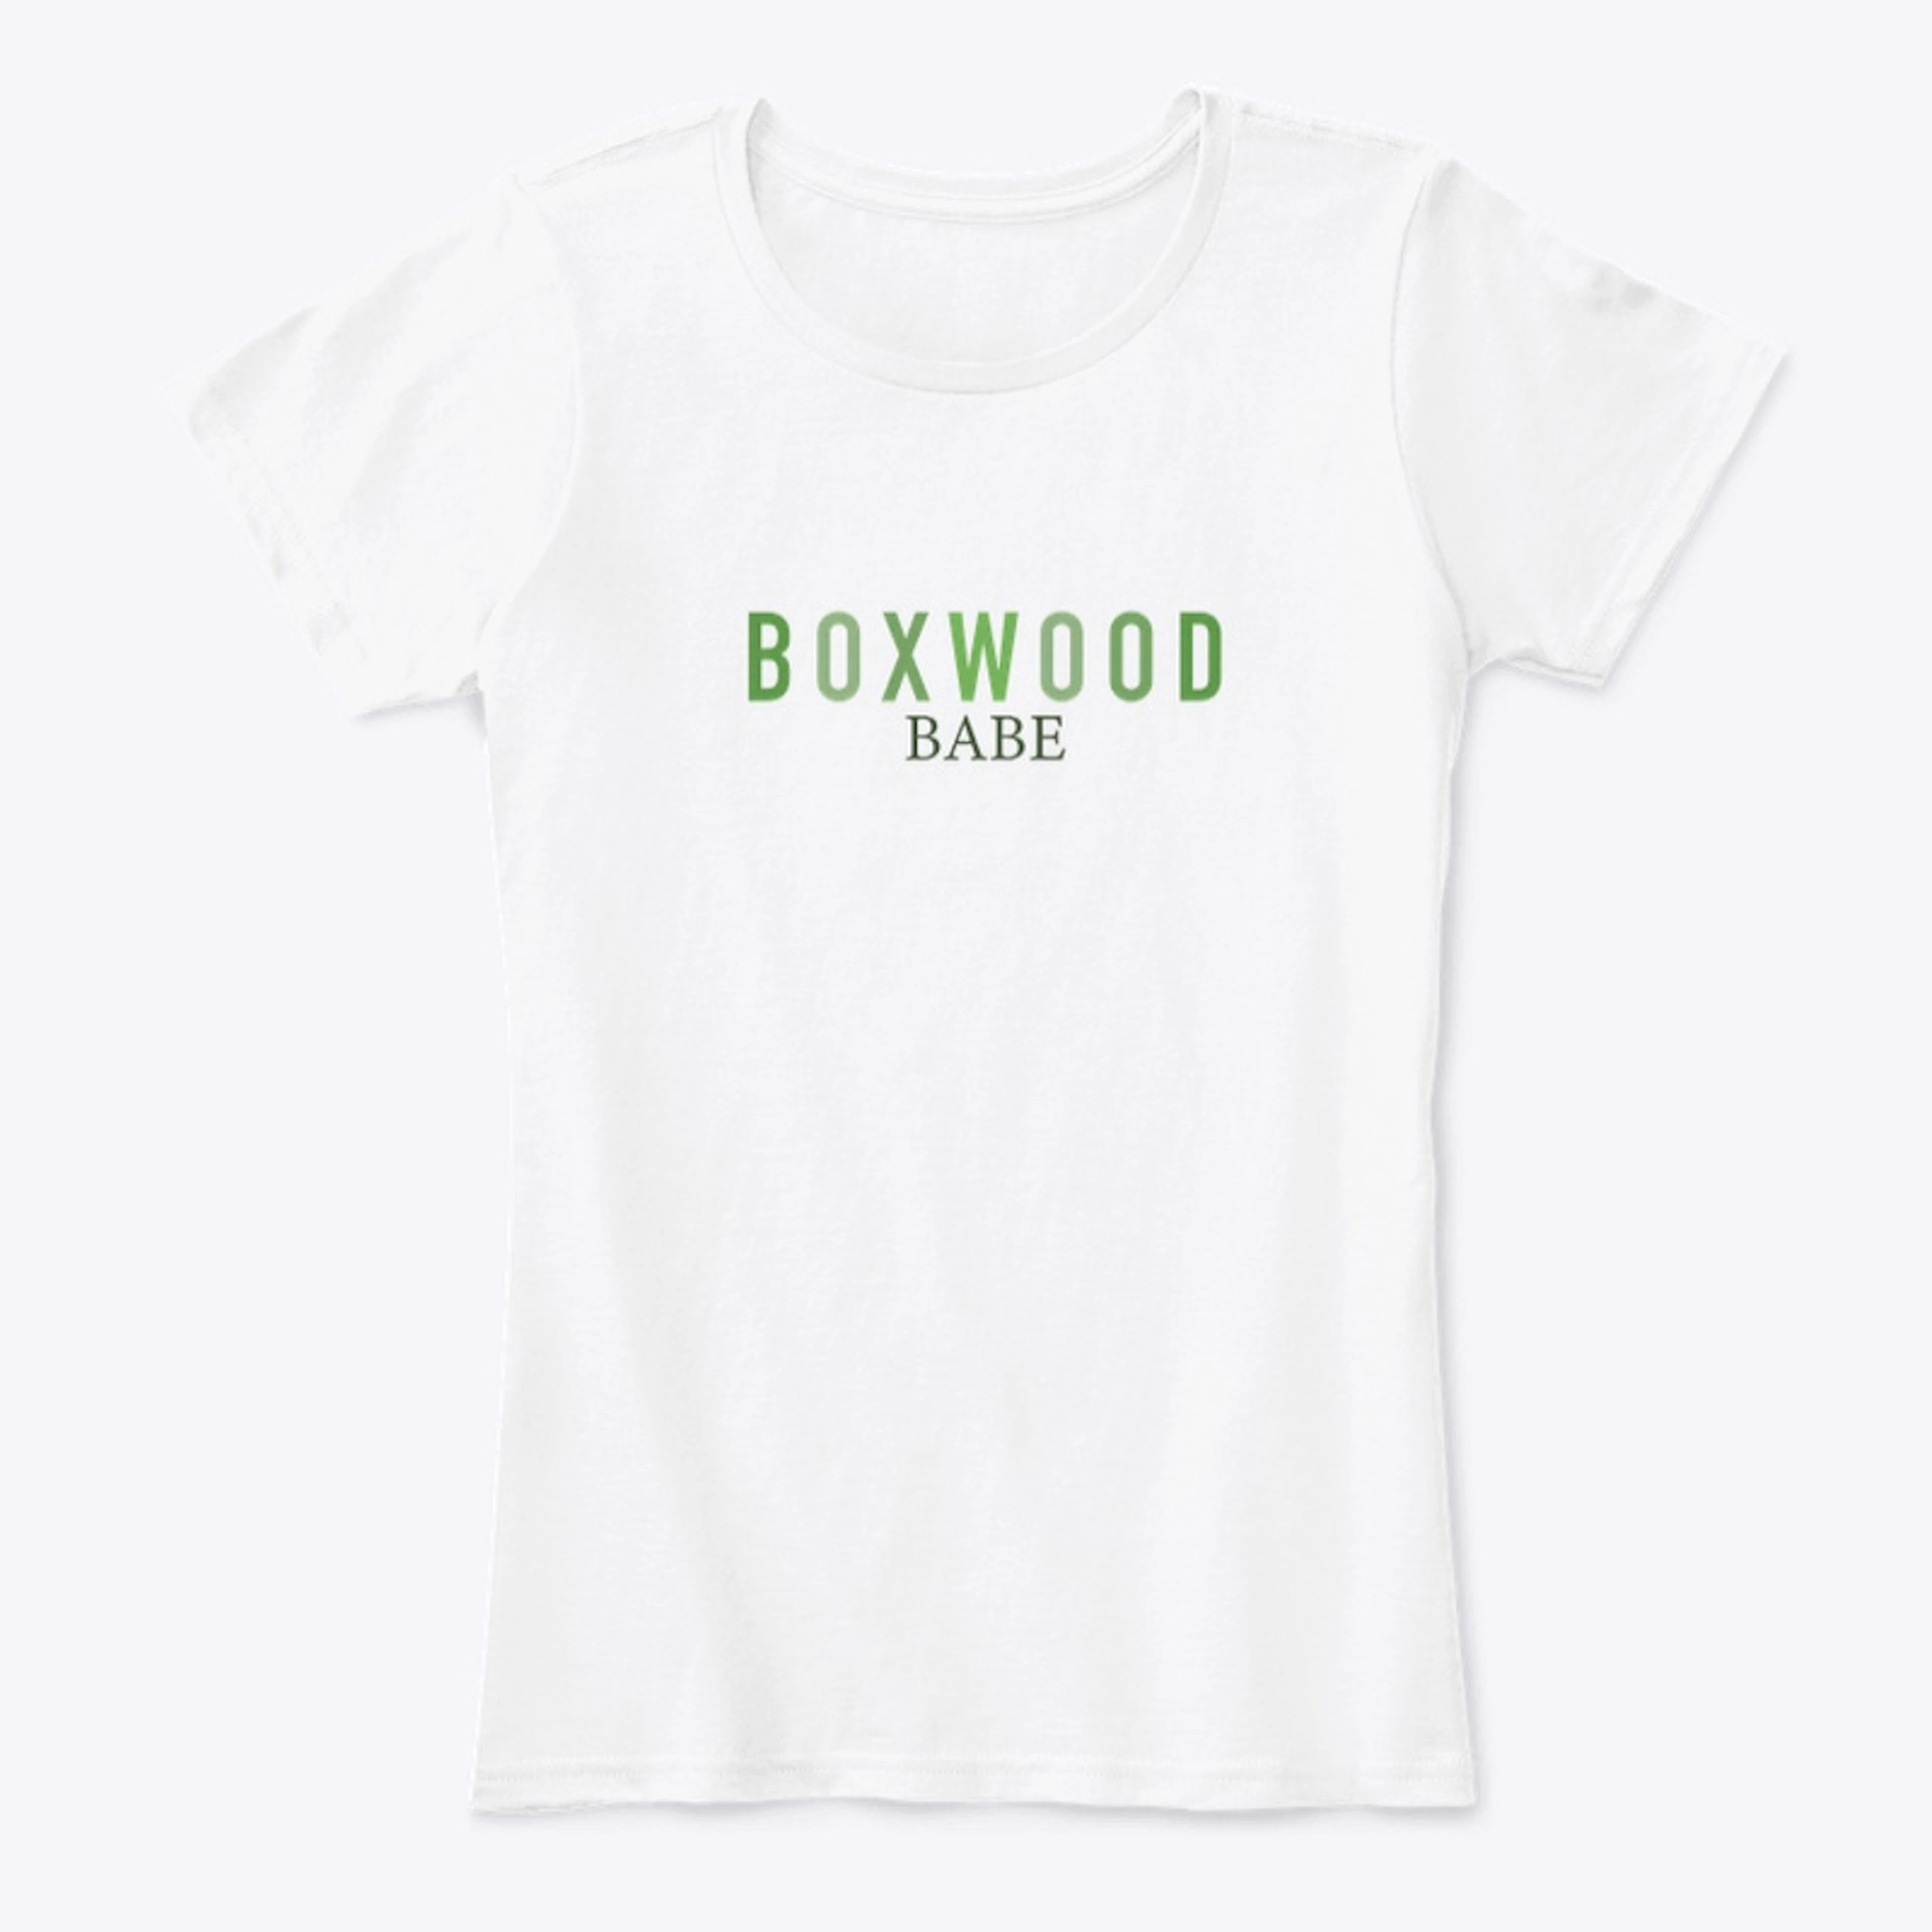 Boxwood Babe T-Shirt || Linda Vater